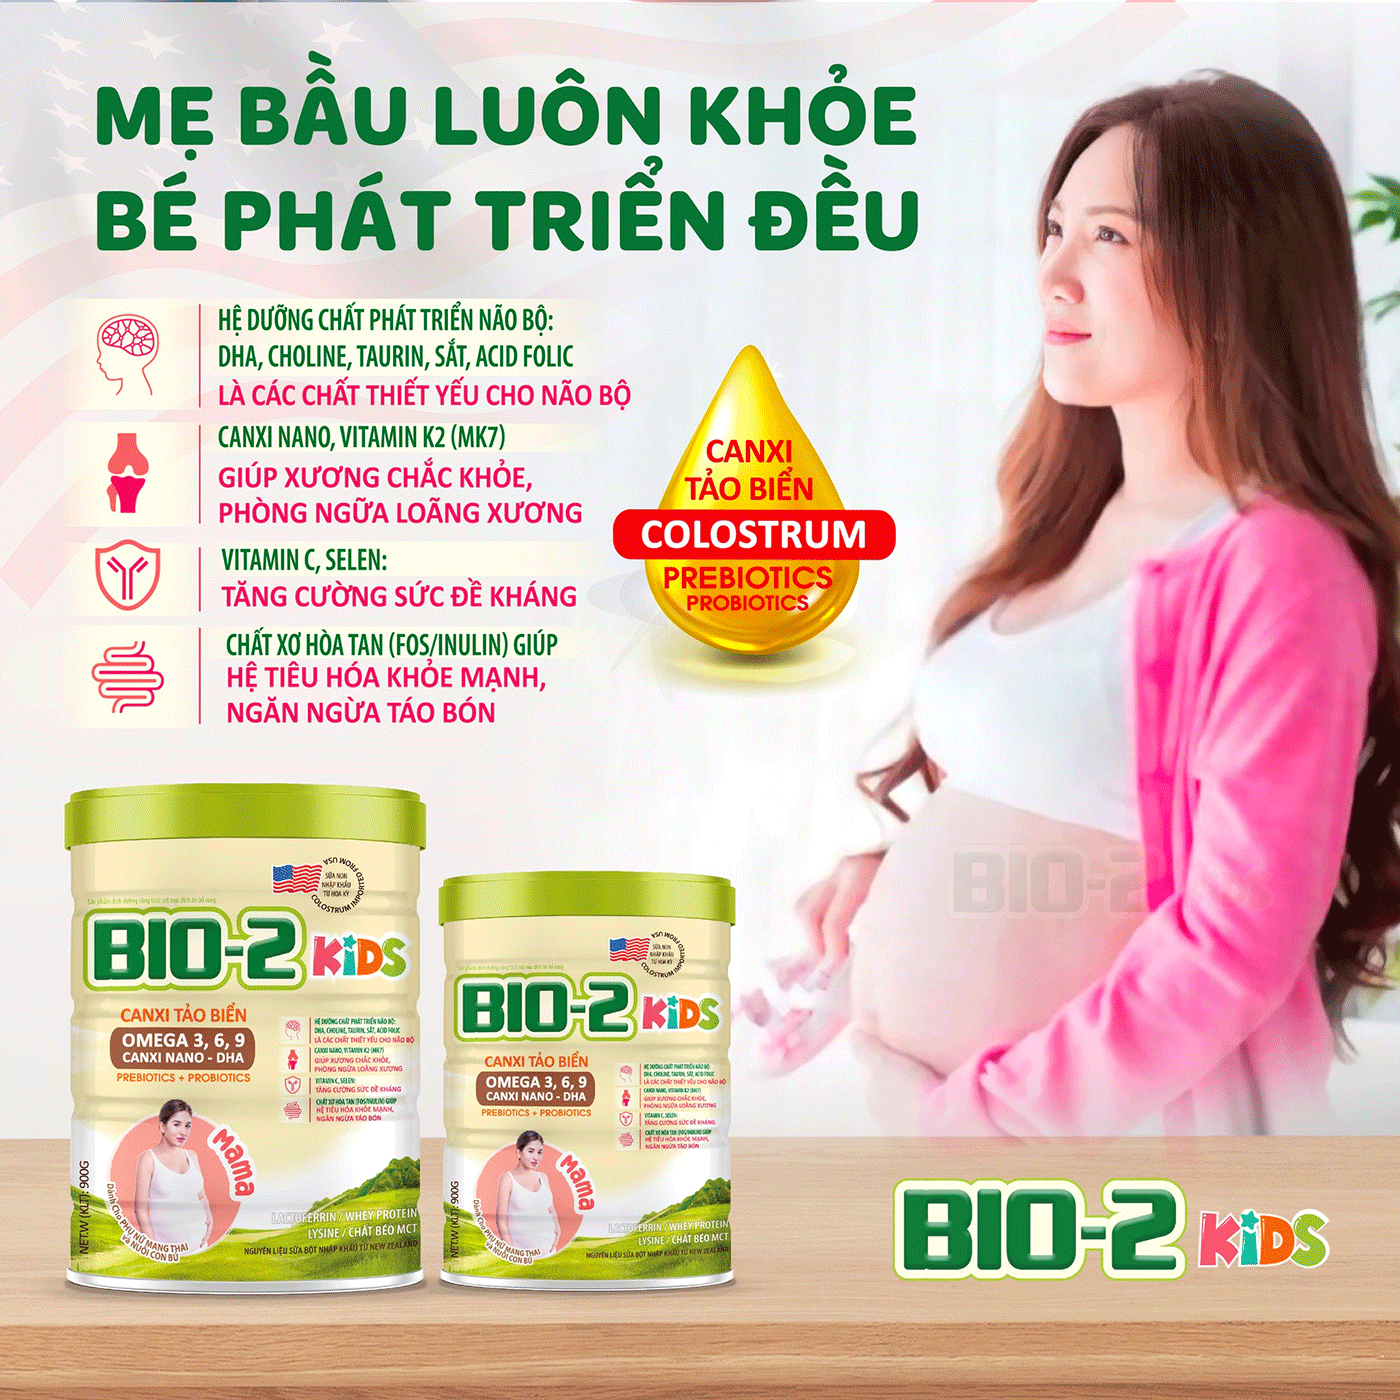 Thương hiệu BIO-2 Kids - Đột phá dưỡng chất, hướng tới phát triển toàn diện cho người Việt - 4